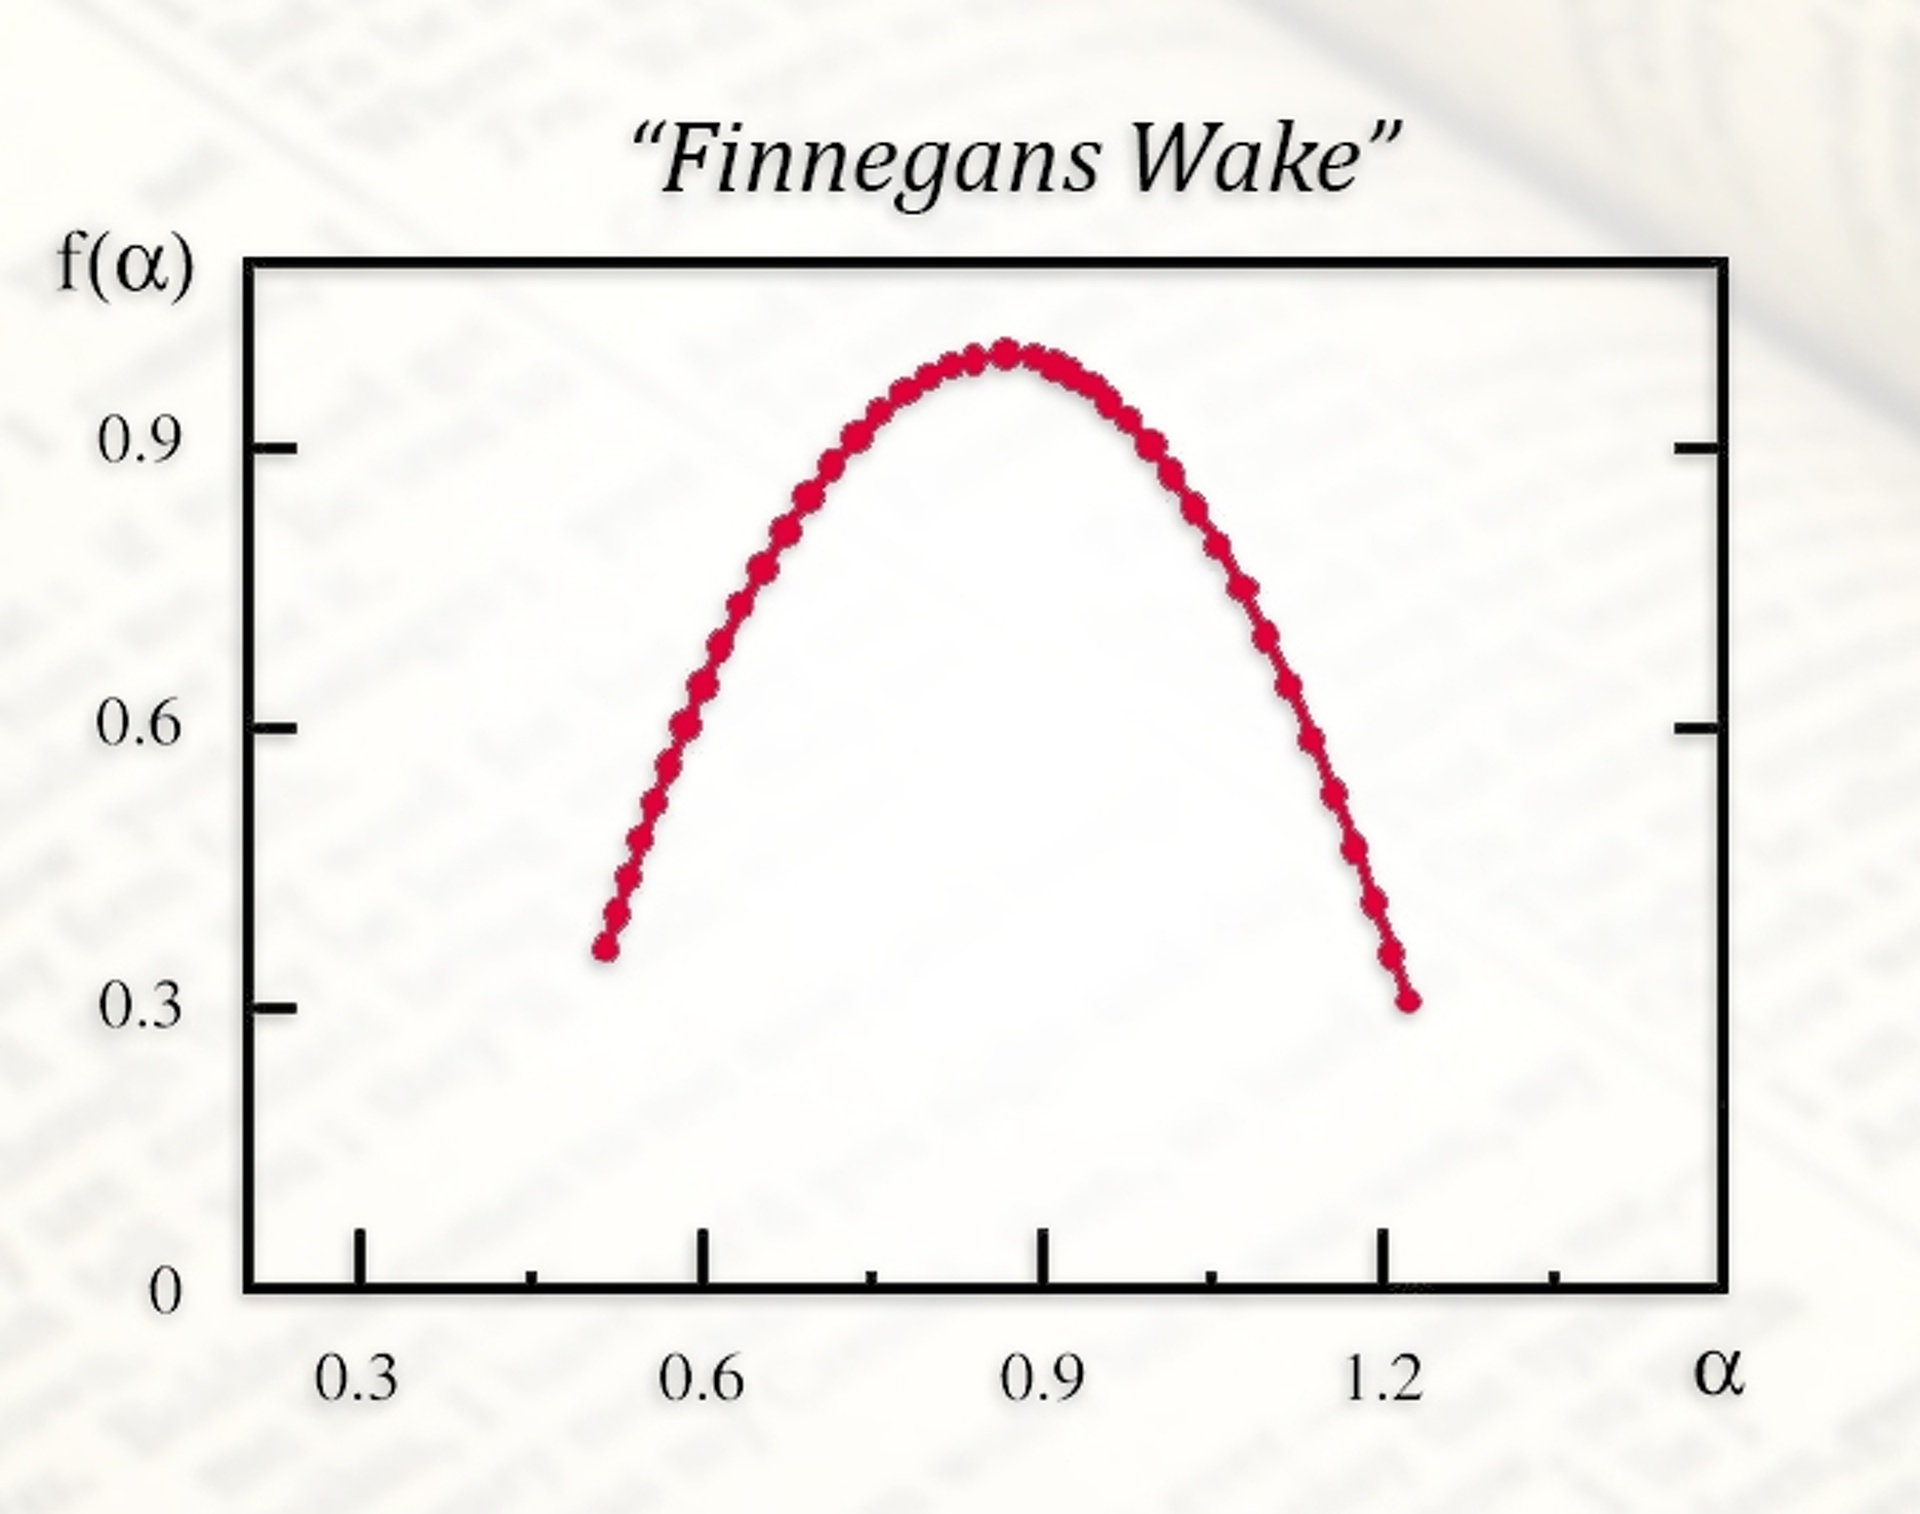 Plotting of Finnegans Wake on graph. 